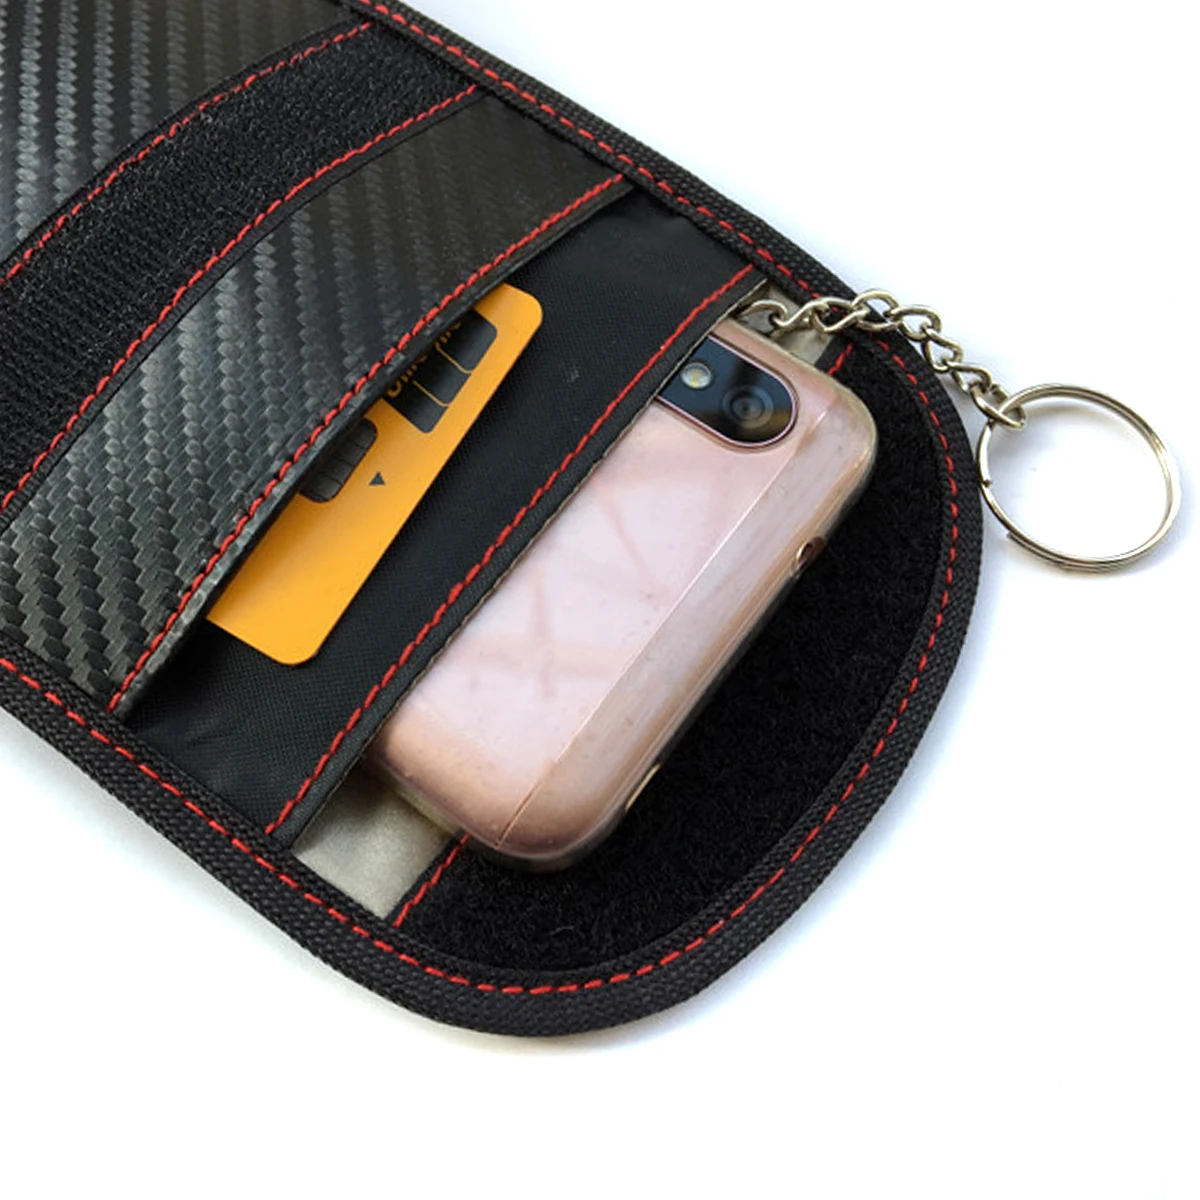 1 шт./2 шт. портативный сигнальный блокатор автомобильный чехол для ключей Faraday клетка без ключа брелок сумка RFID экранирующая сумка с кольцом